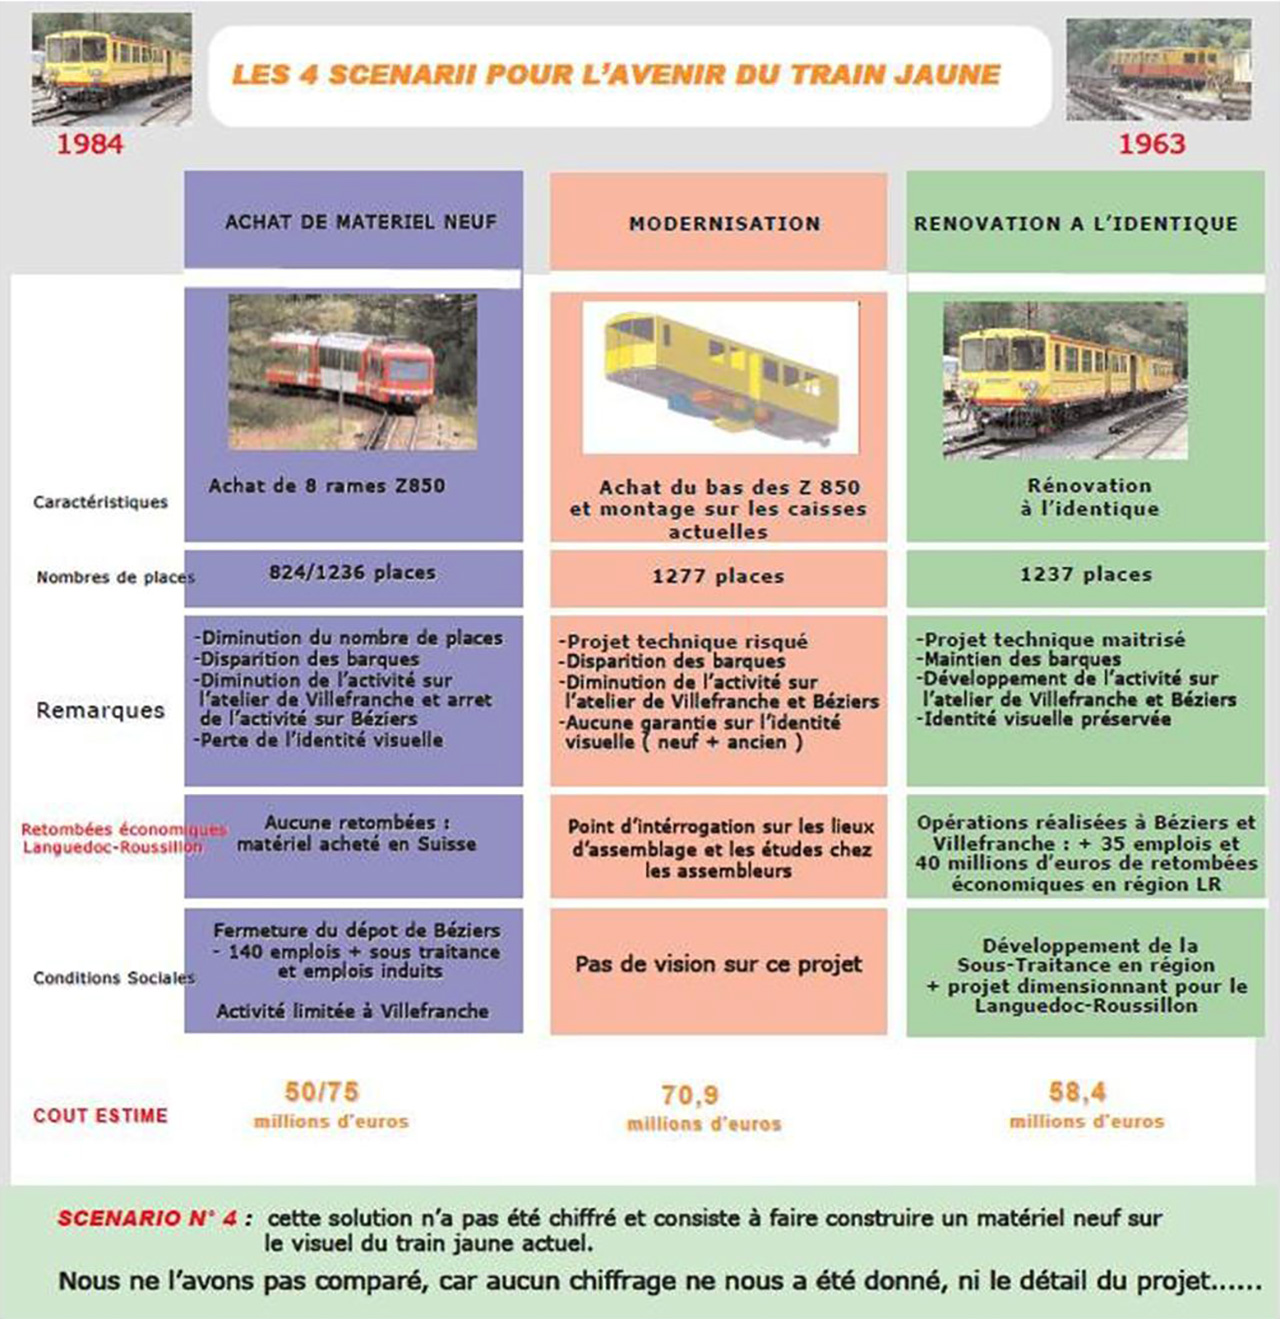 Les 4 scenarii pour l avenir du train jaune